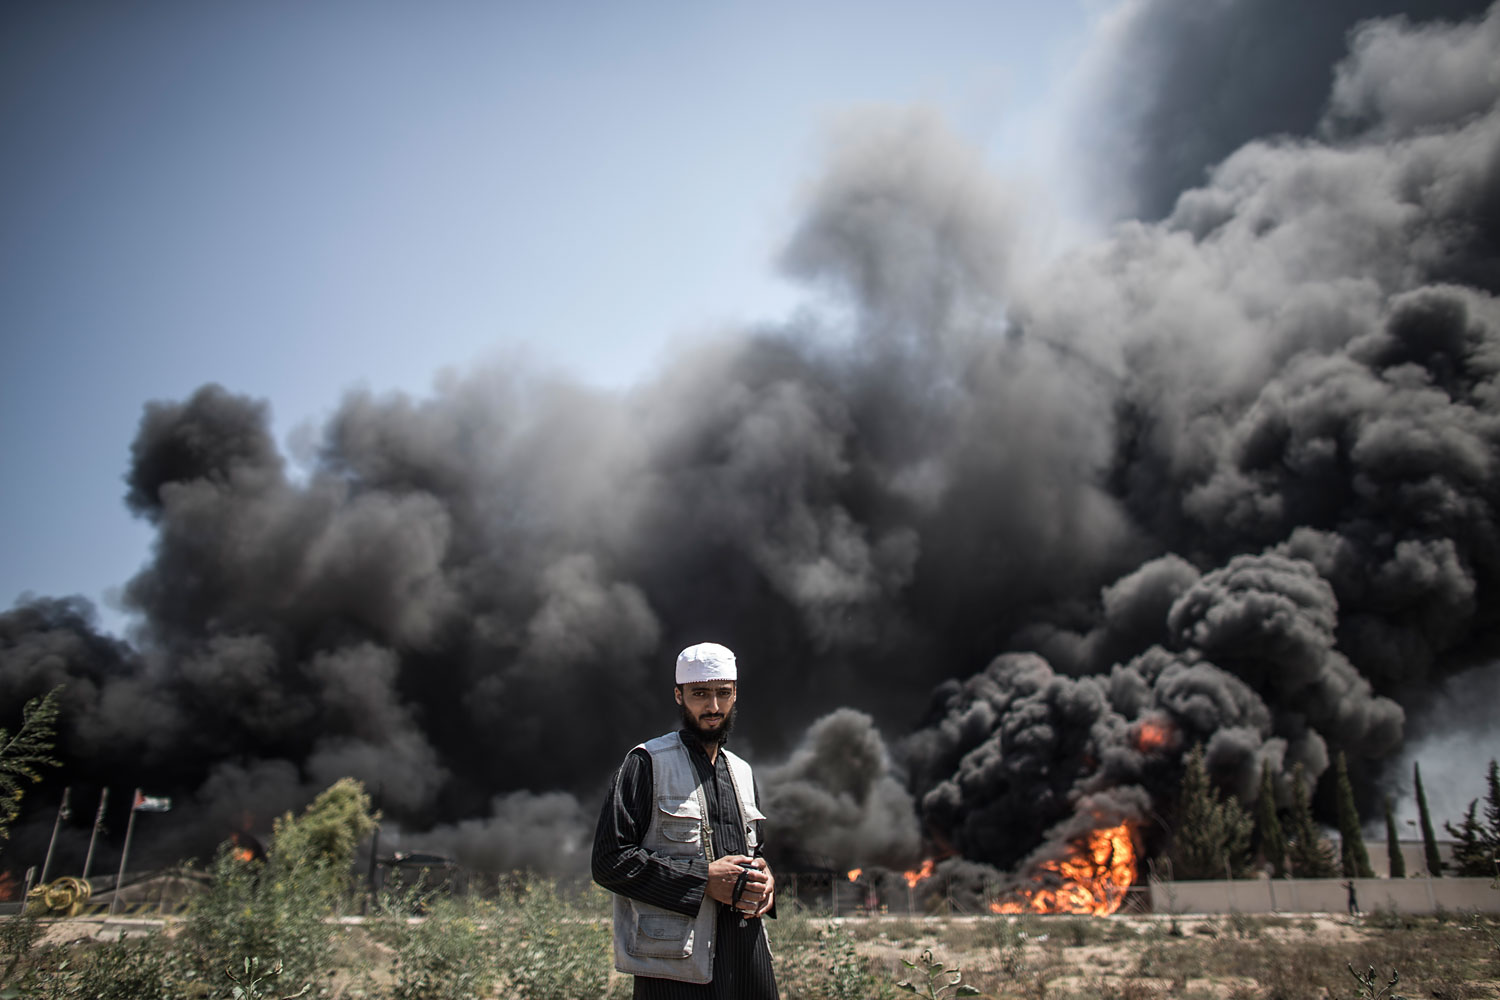 Israel renewed intense airstrikes on Gaza